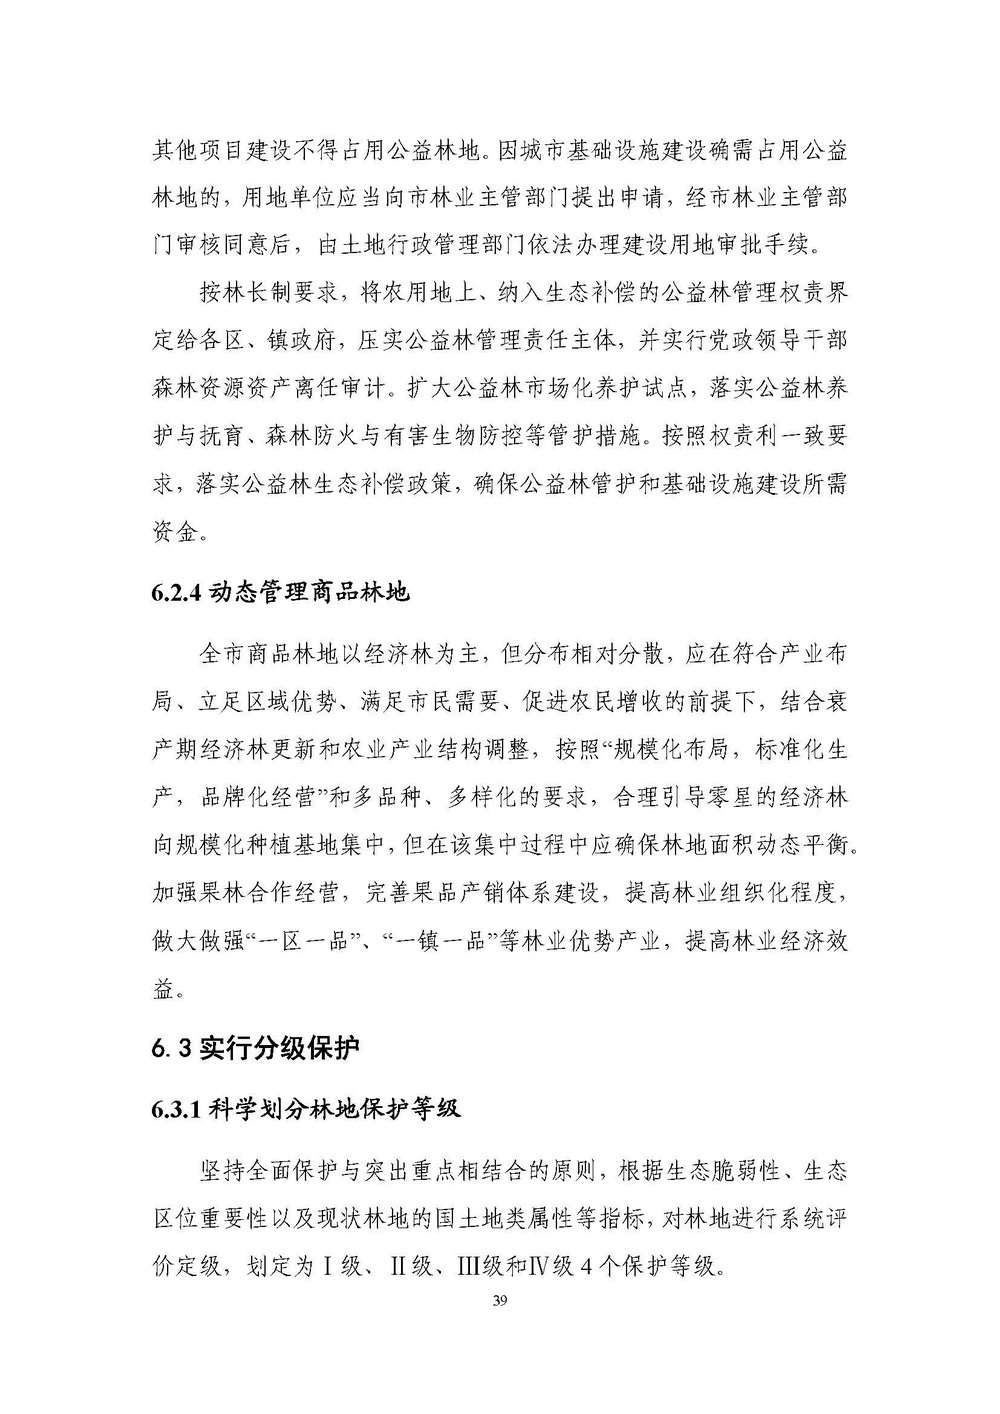 上海市森林和林地保护利用规划文本 公开稿 附图_页面_42.jpg